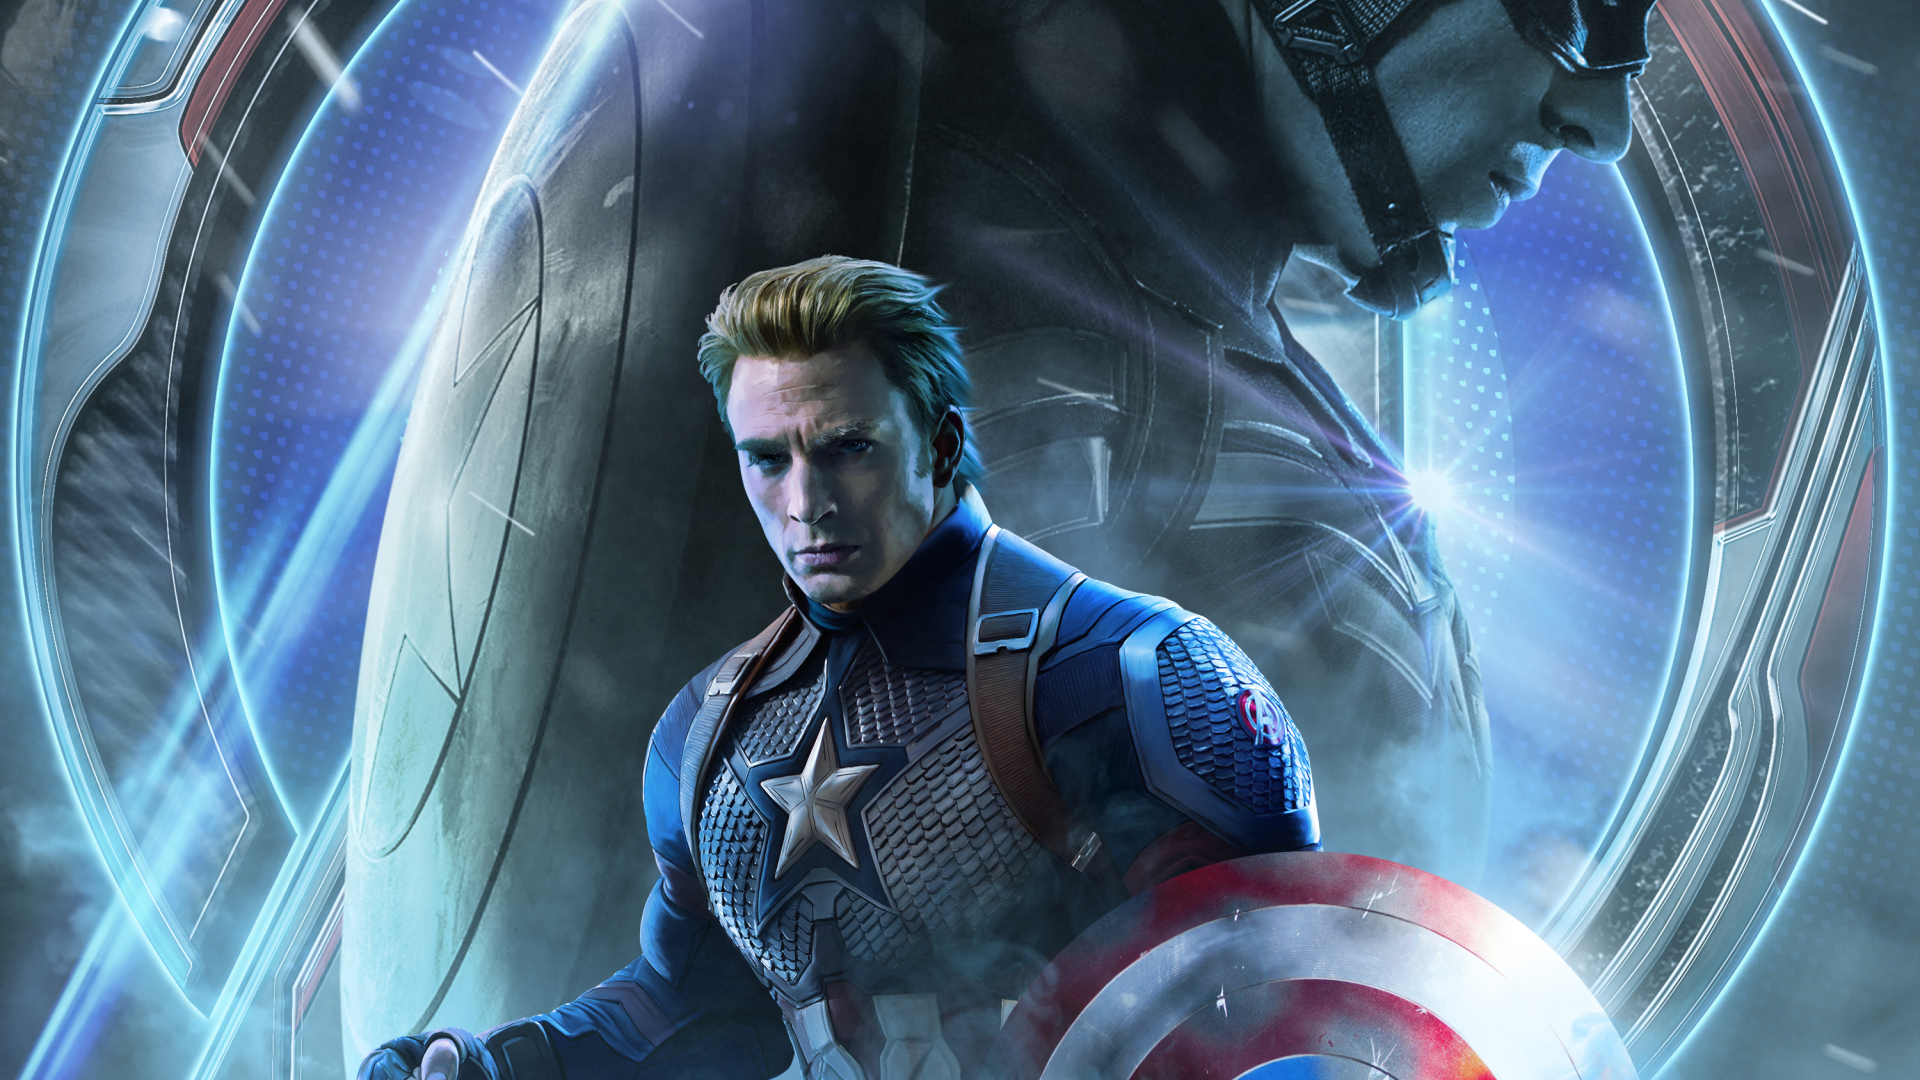 Avengers Endgame Captain America Poster Art 1080P Laptop